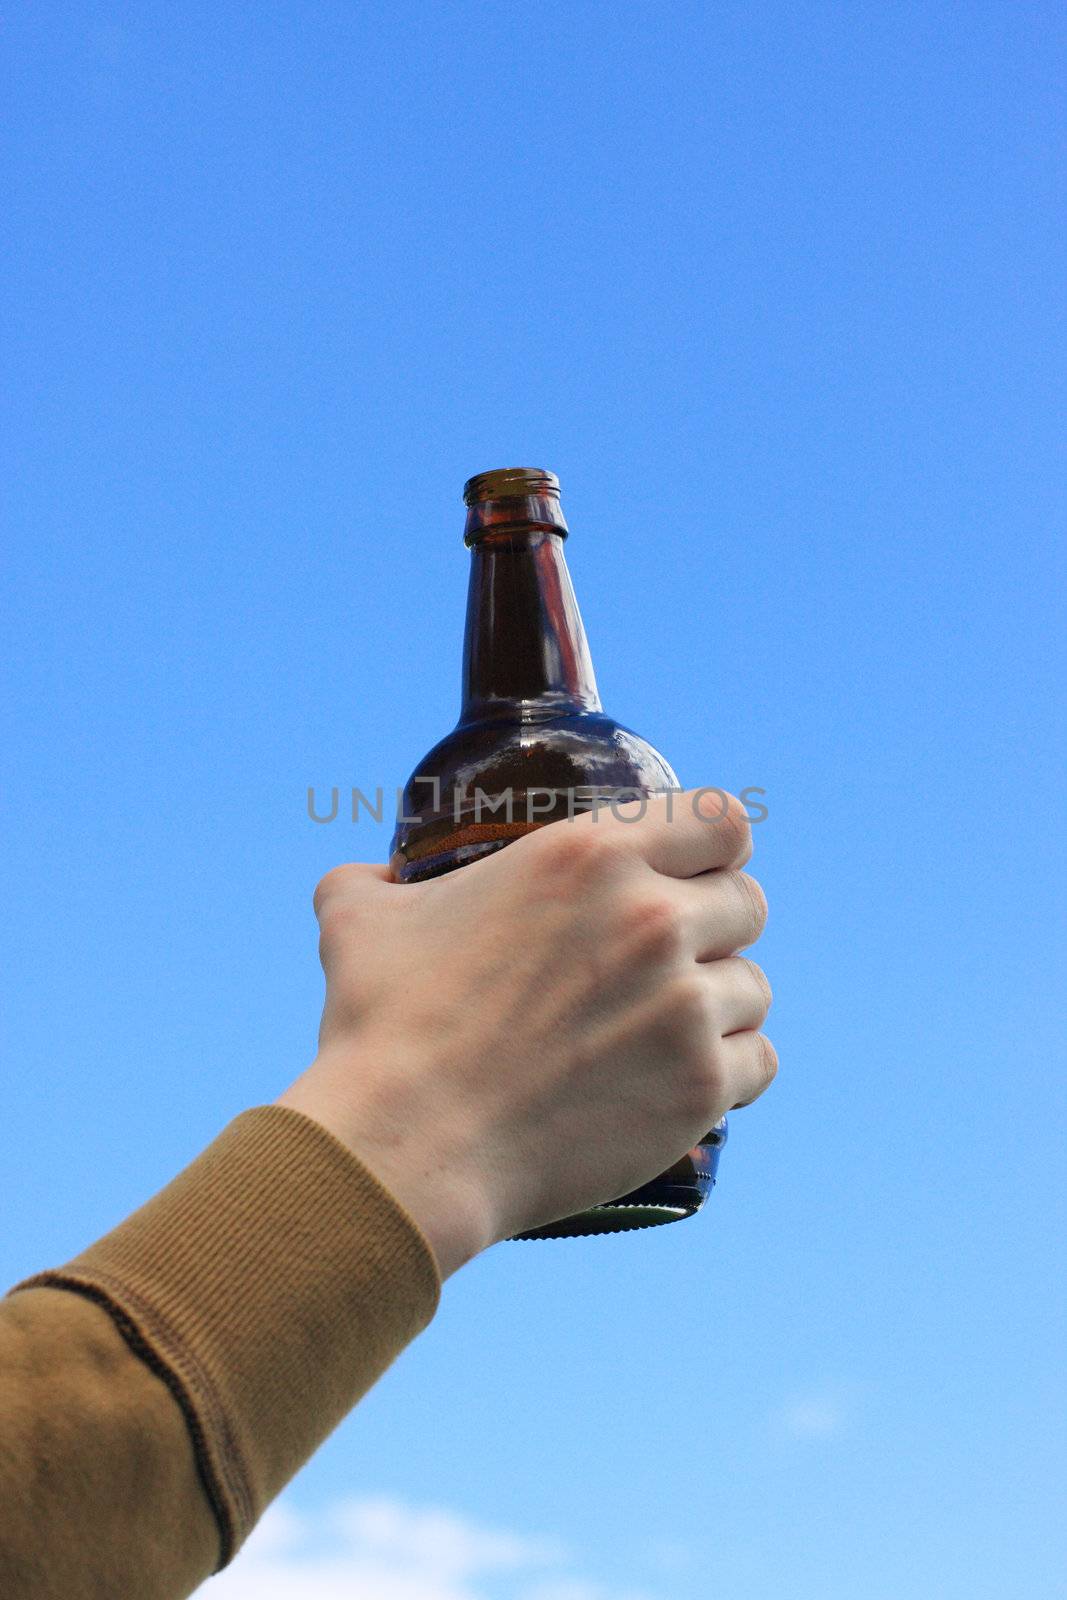 Hand, bottle, beer,  sky, drink